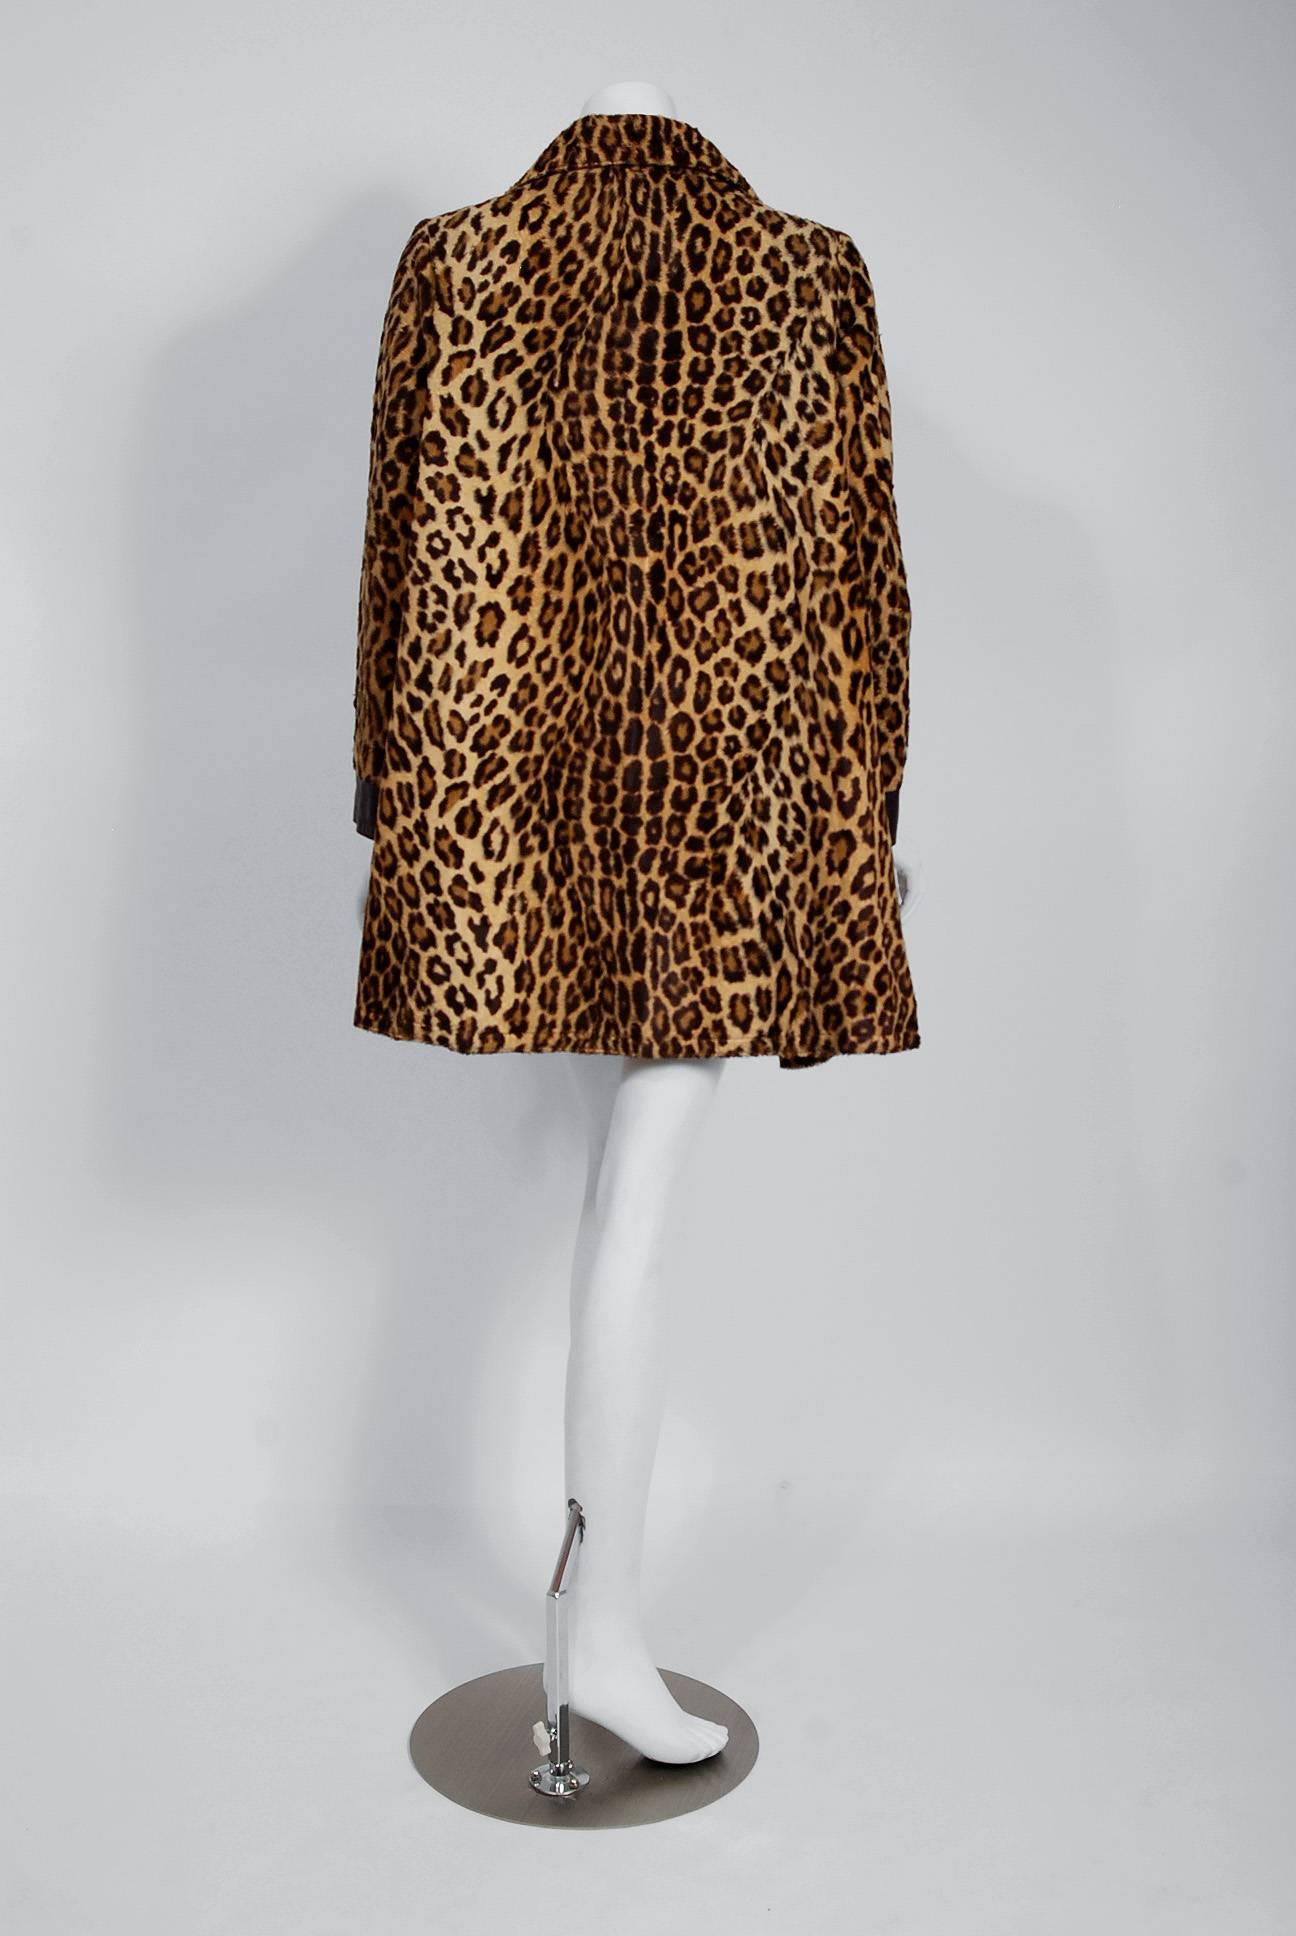 Women's or Men's 1968 Pierre Cardin Leopard Print Faux Fur Mod Space-Age Pockets Trench Jacket